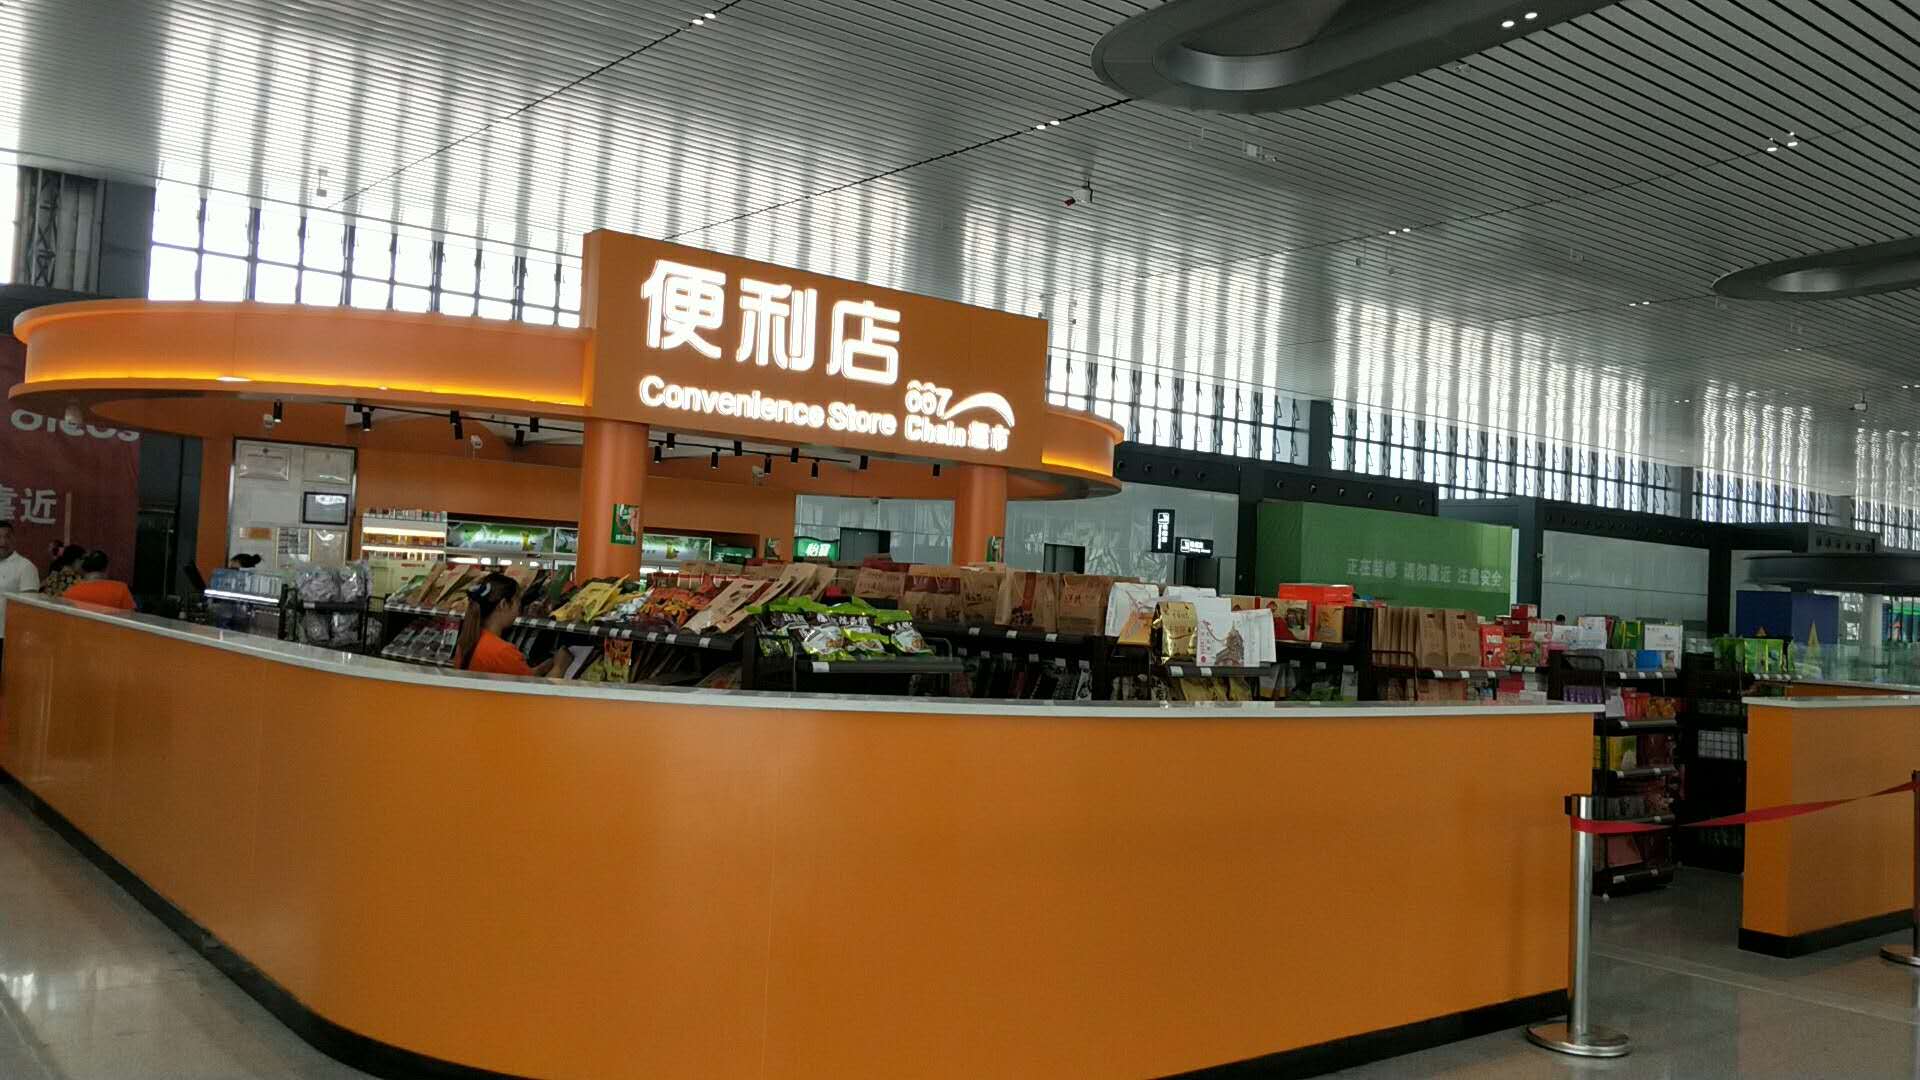 重庆市谷谷香餐饮文化有限公司 环境照片活动图片